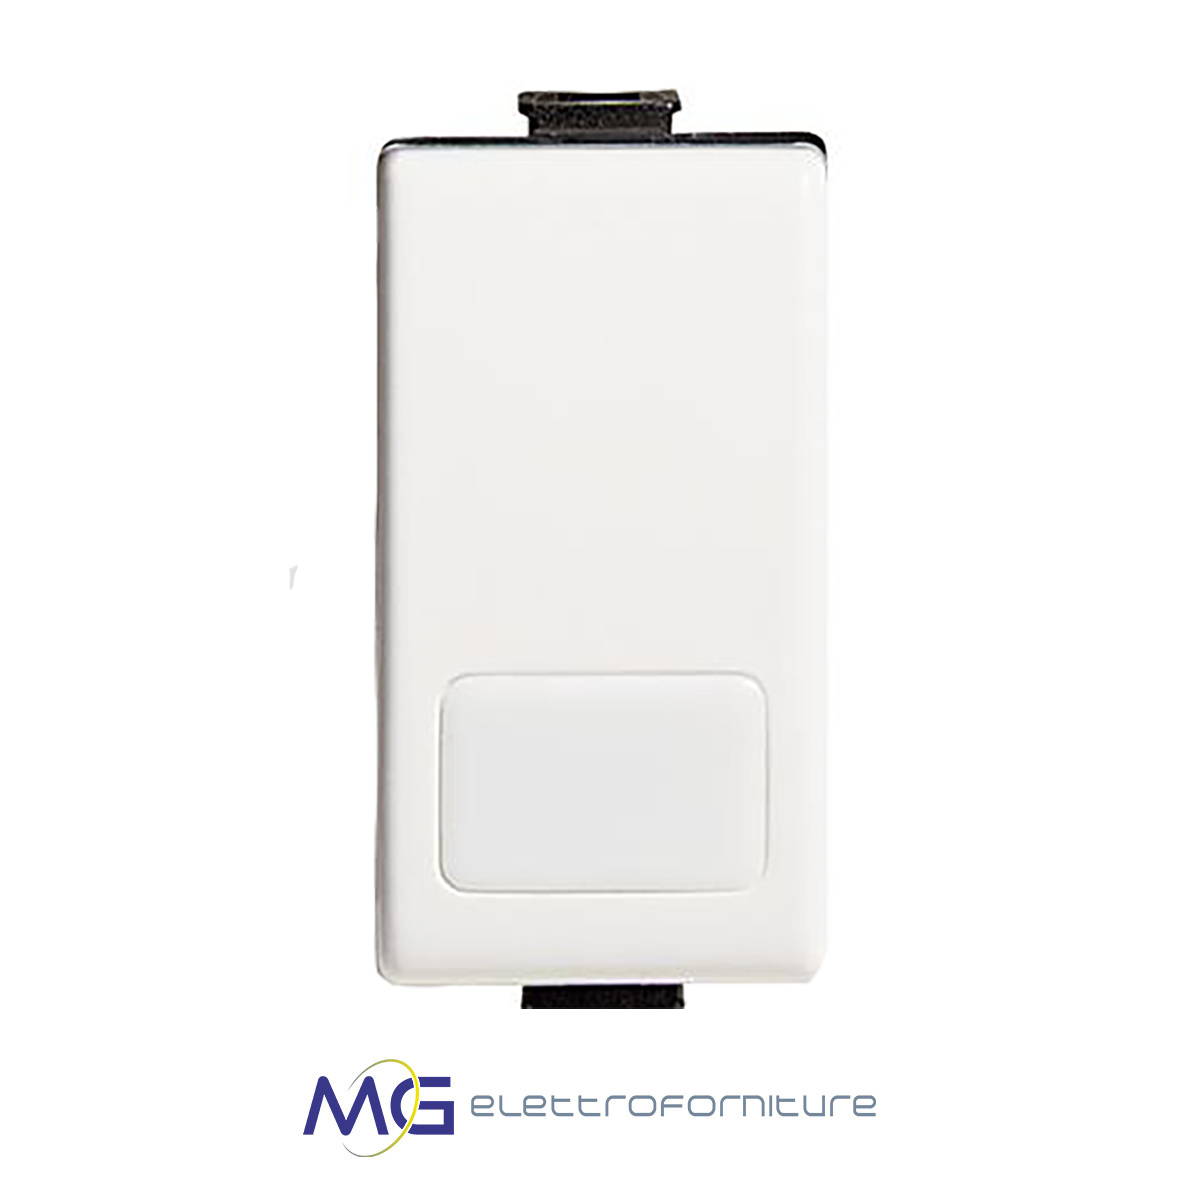 BTICINO AM5001L Interruttore 1P Matix Illuminabile con led bianco - Vendita  Online Materiale elettrico, antifurti, videosorveglianza - Mg  Elettroforniture